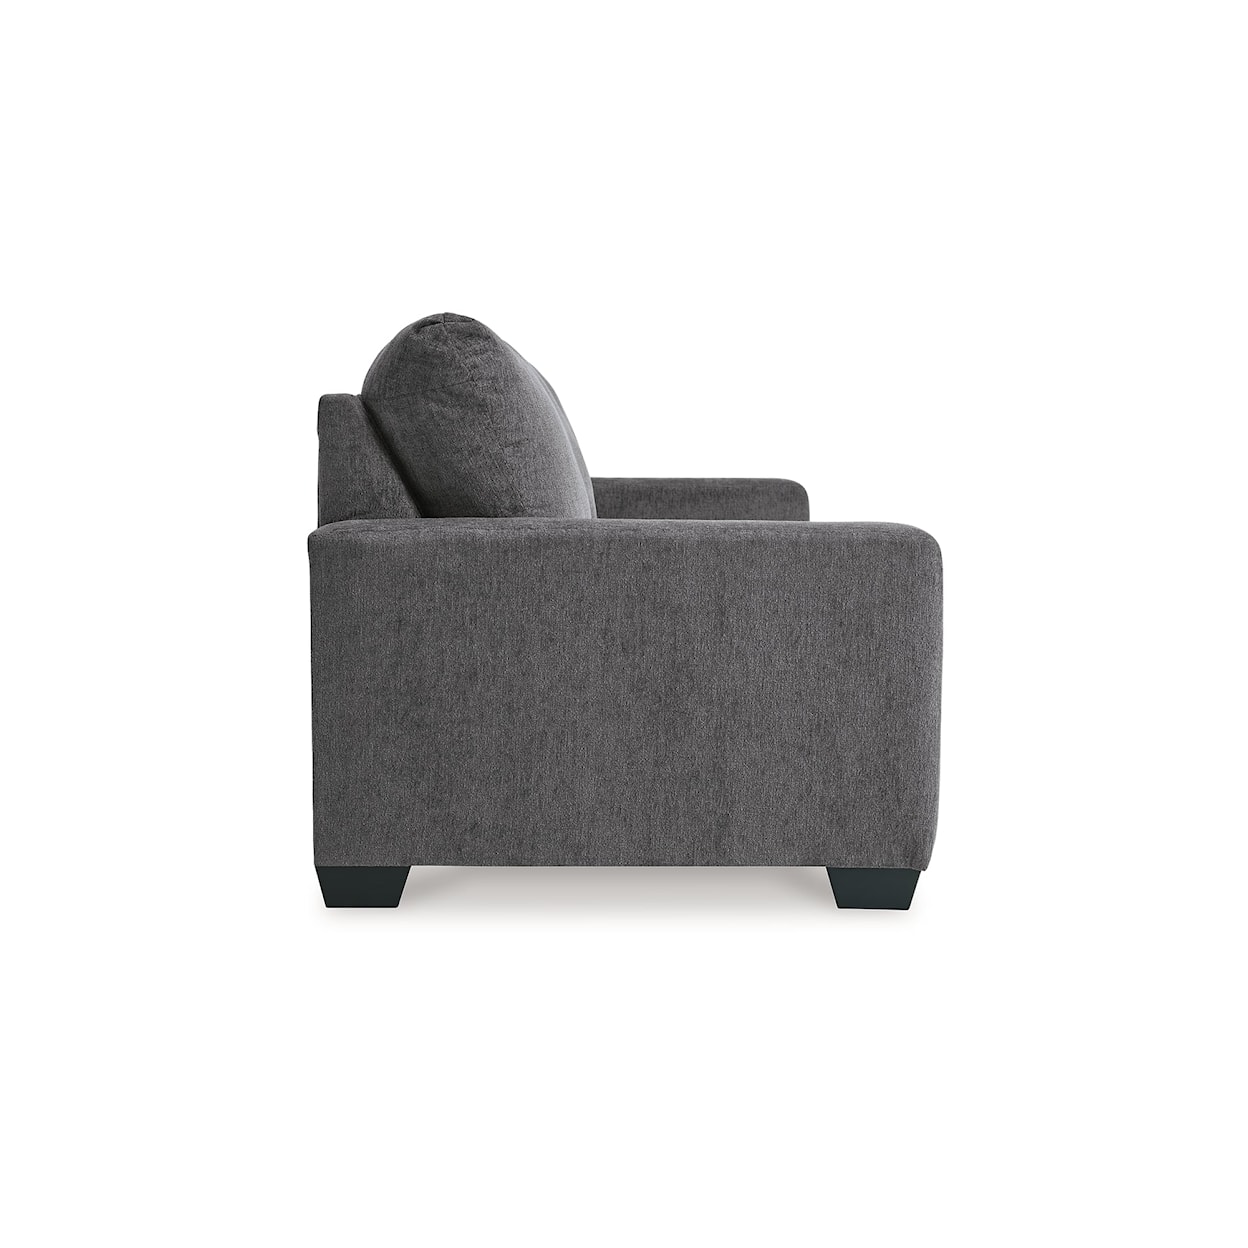 Ashley Furniture Signature Design Rannis Queen Sleeper Sofa